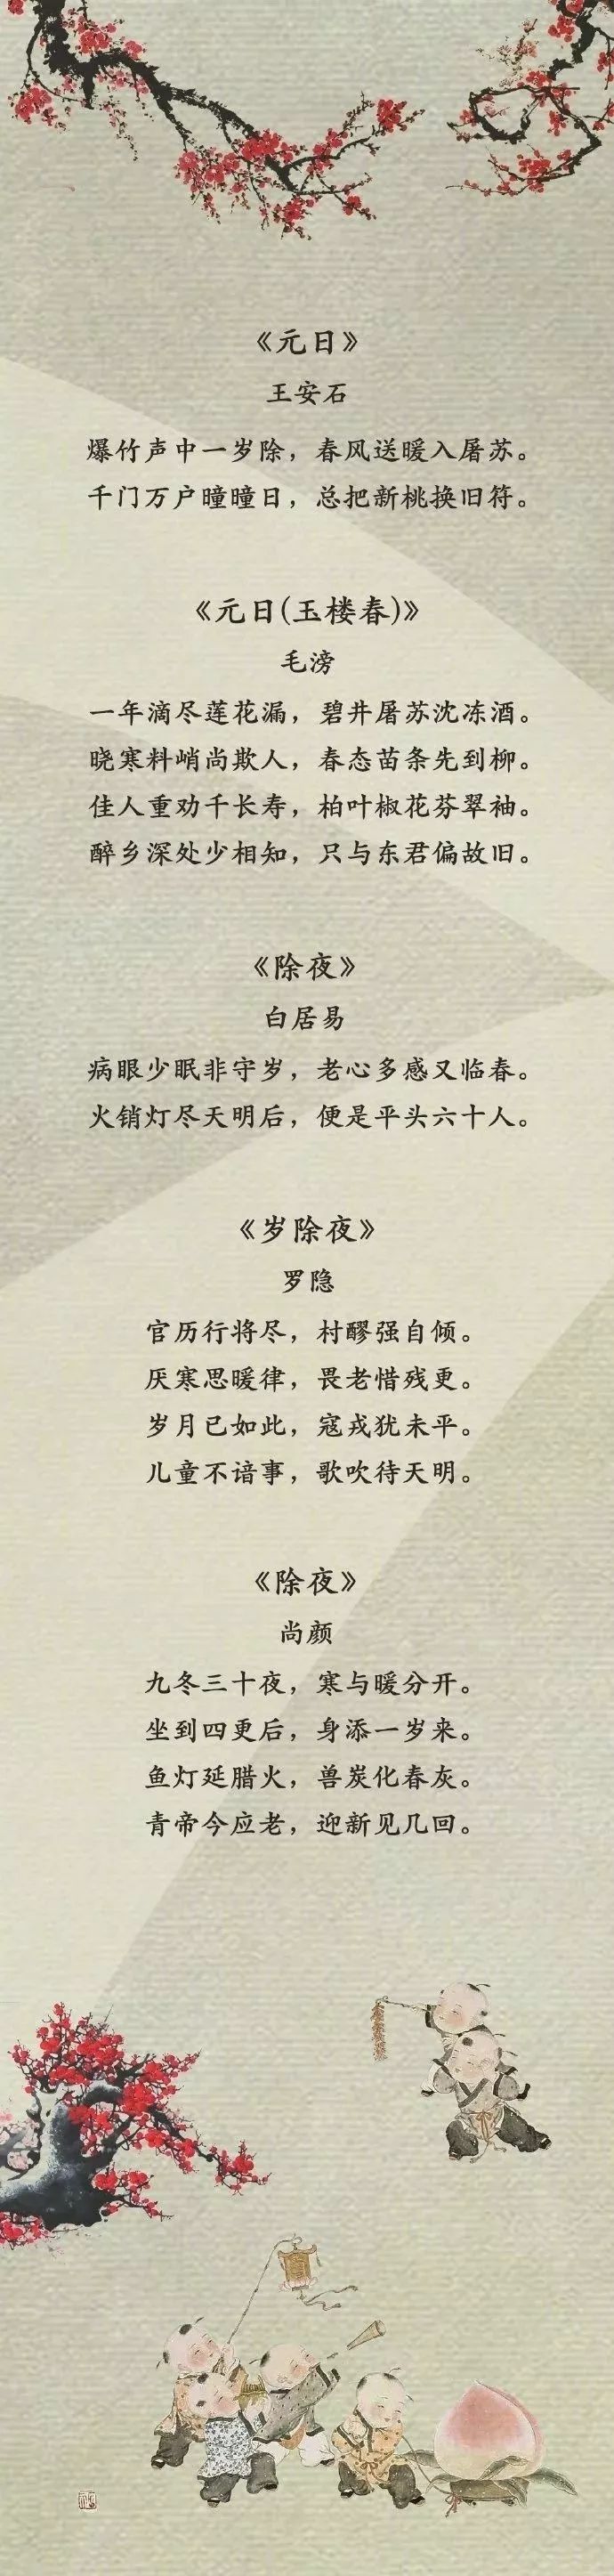 这50首关于春节的经典古诗词,太有韵味了!